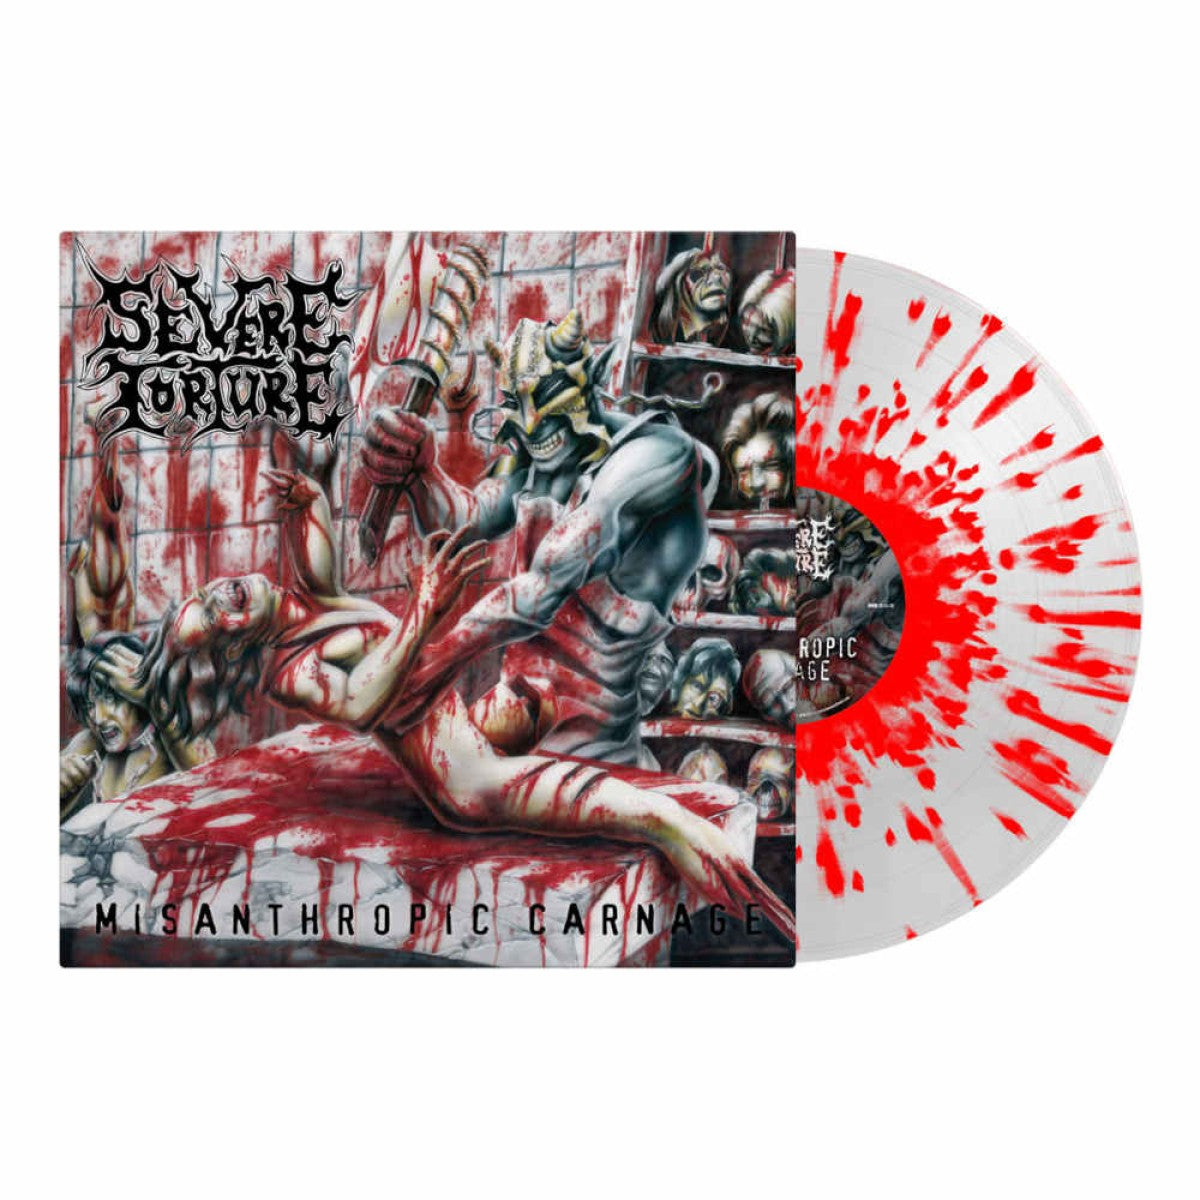 Severe Torture "Misanthropic Carnage" Splatter Vinyl